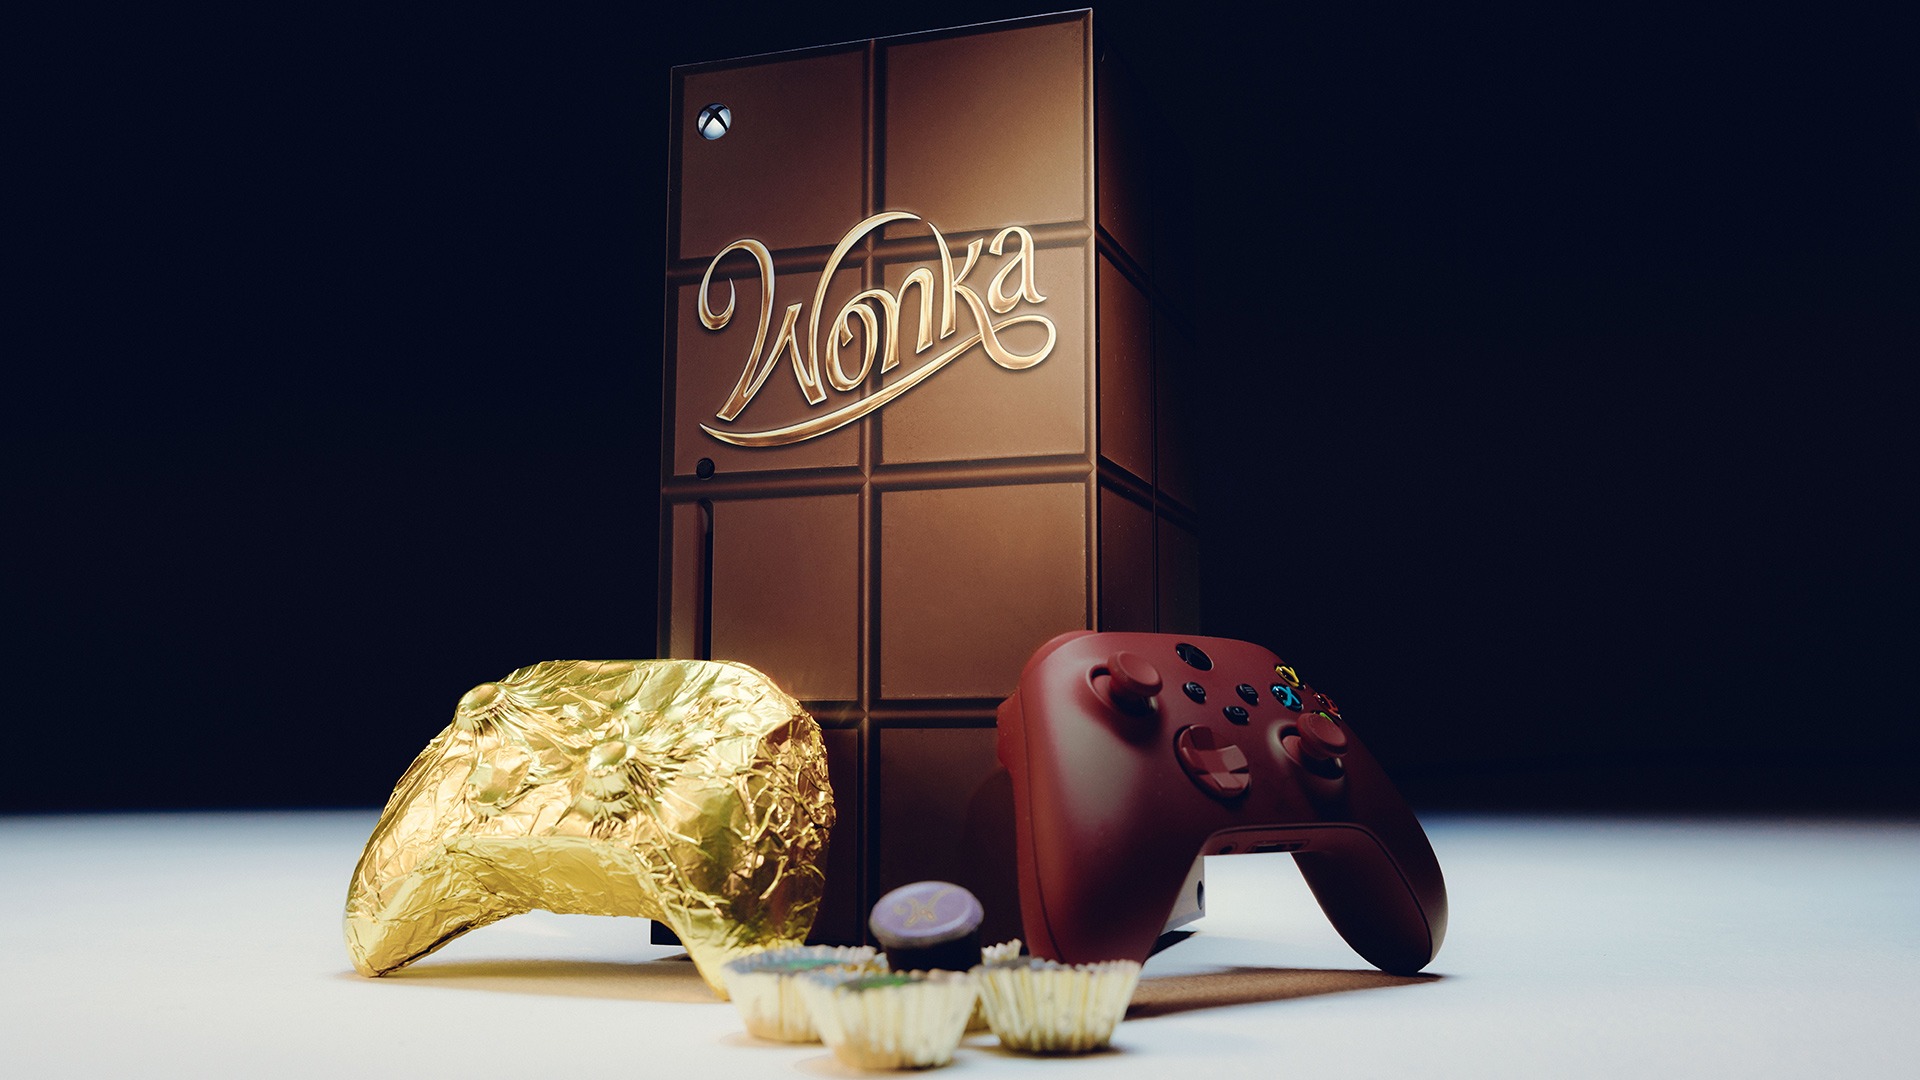 Xbox получил шоколадную версию контроллера к релизу фильма "Вонка"